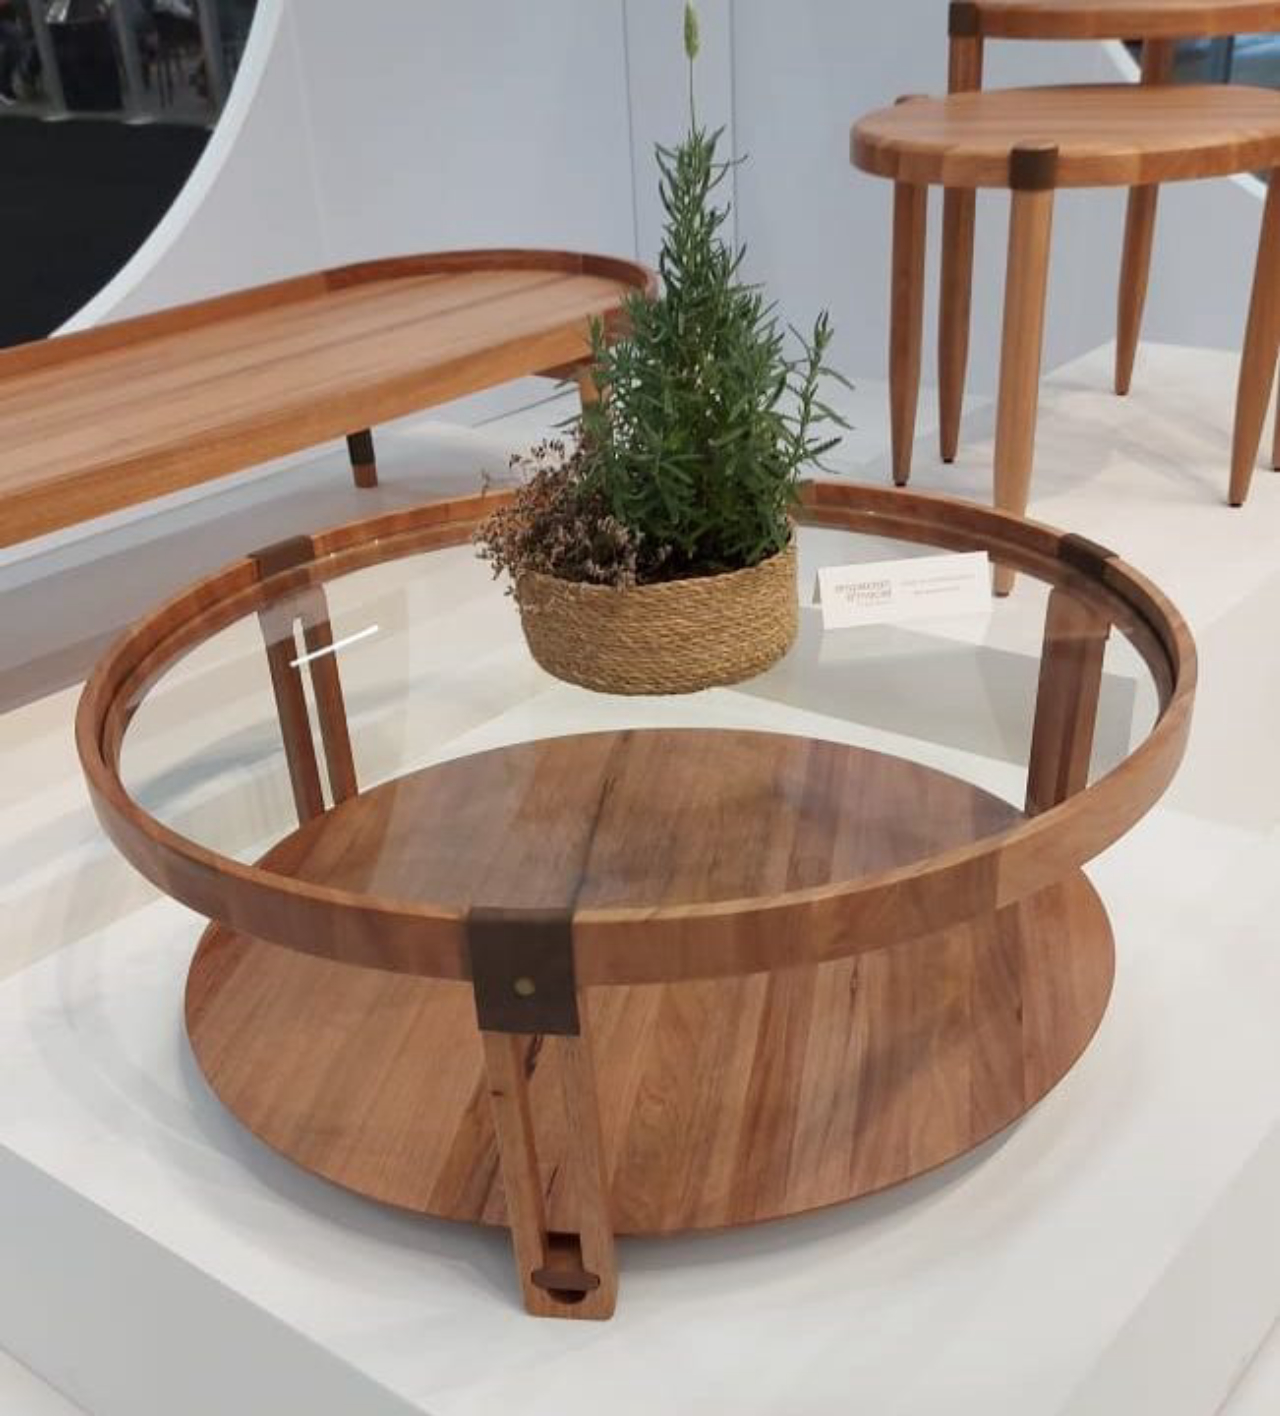 Mesa da linha Bossa Nova, por Mirela Ampezzan para De Lavie, mescla madeira jequitibá, vidro e detalhes em couro.